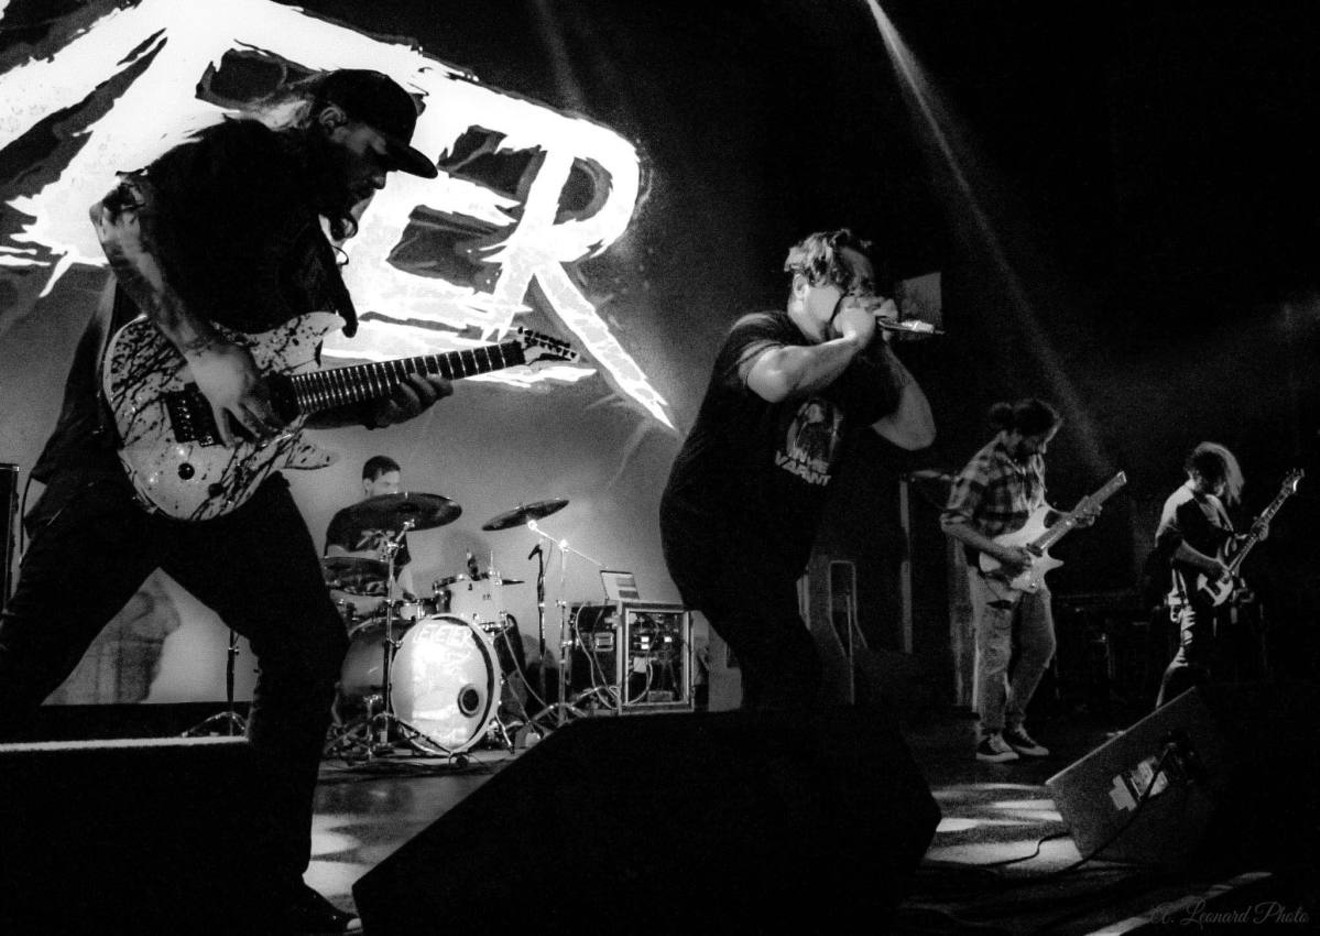 Denver's Leveler makes pissed-off modern metalcore.